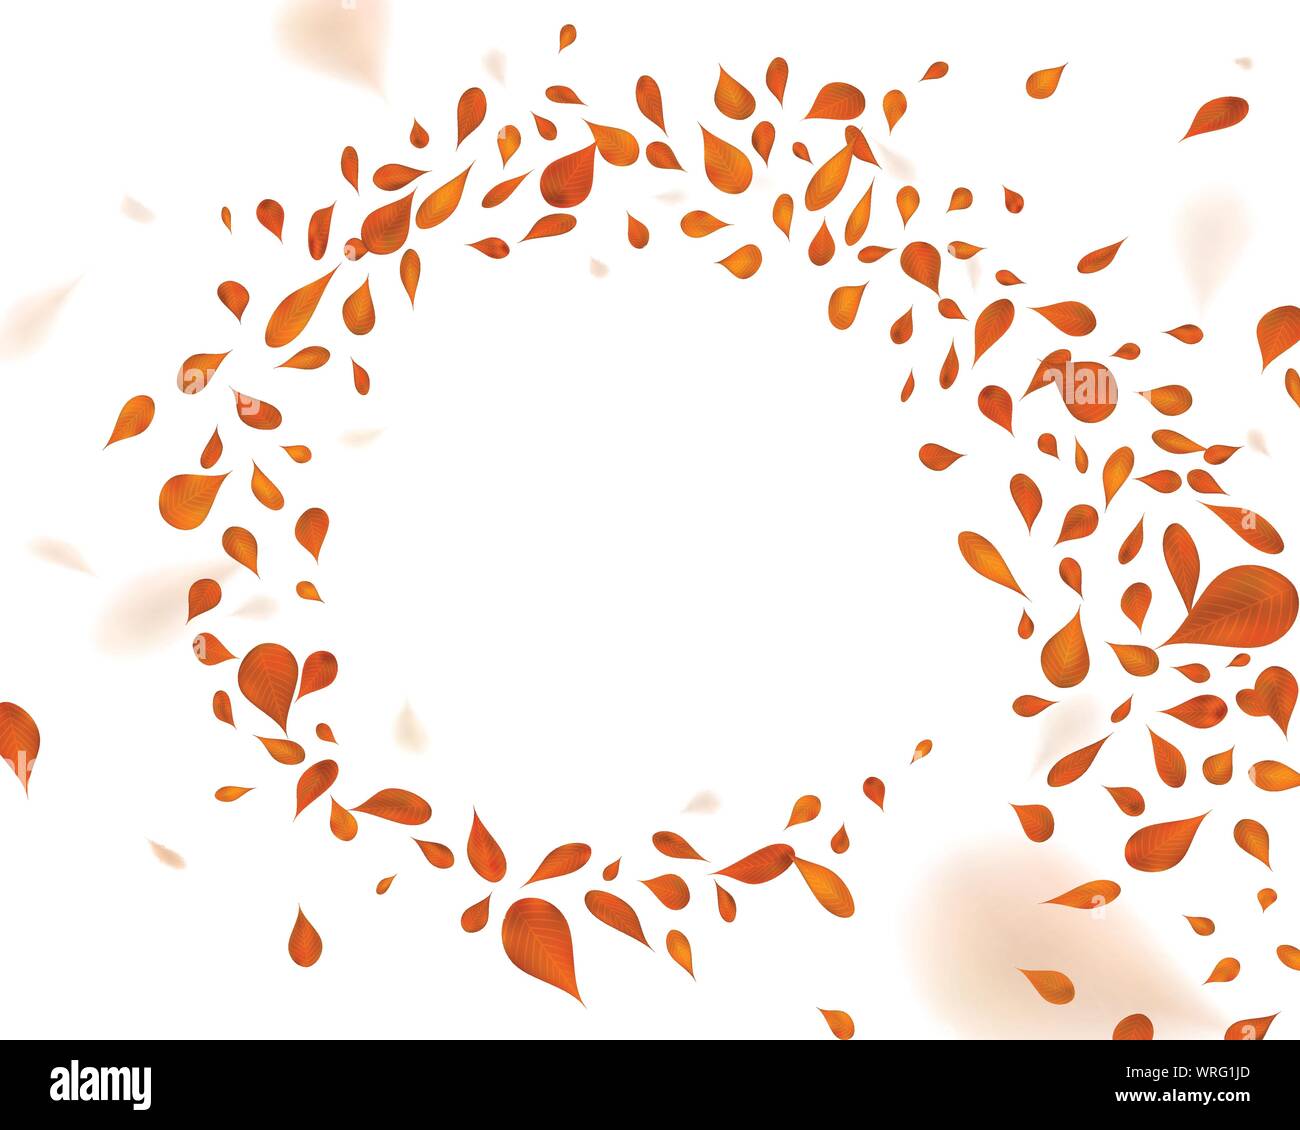 Marrone vorticoso di foglie nel vento. Illustrazione Vettoriale